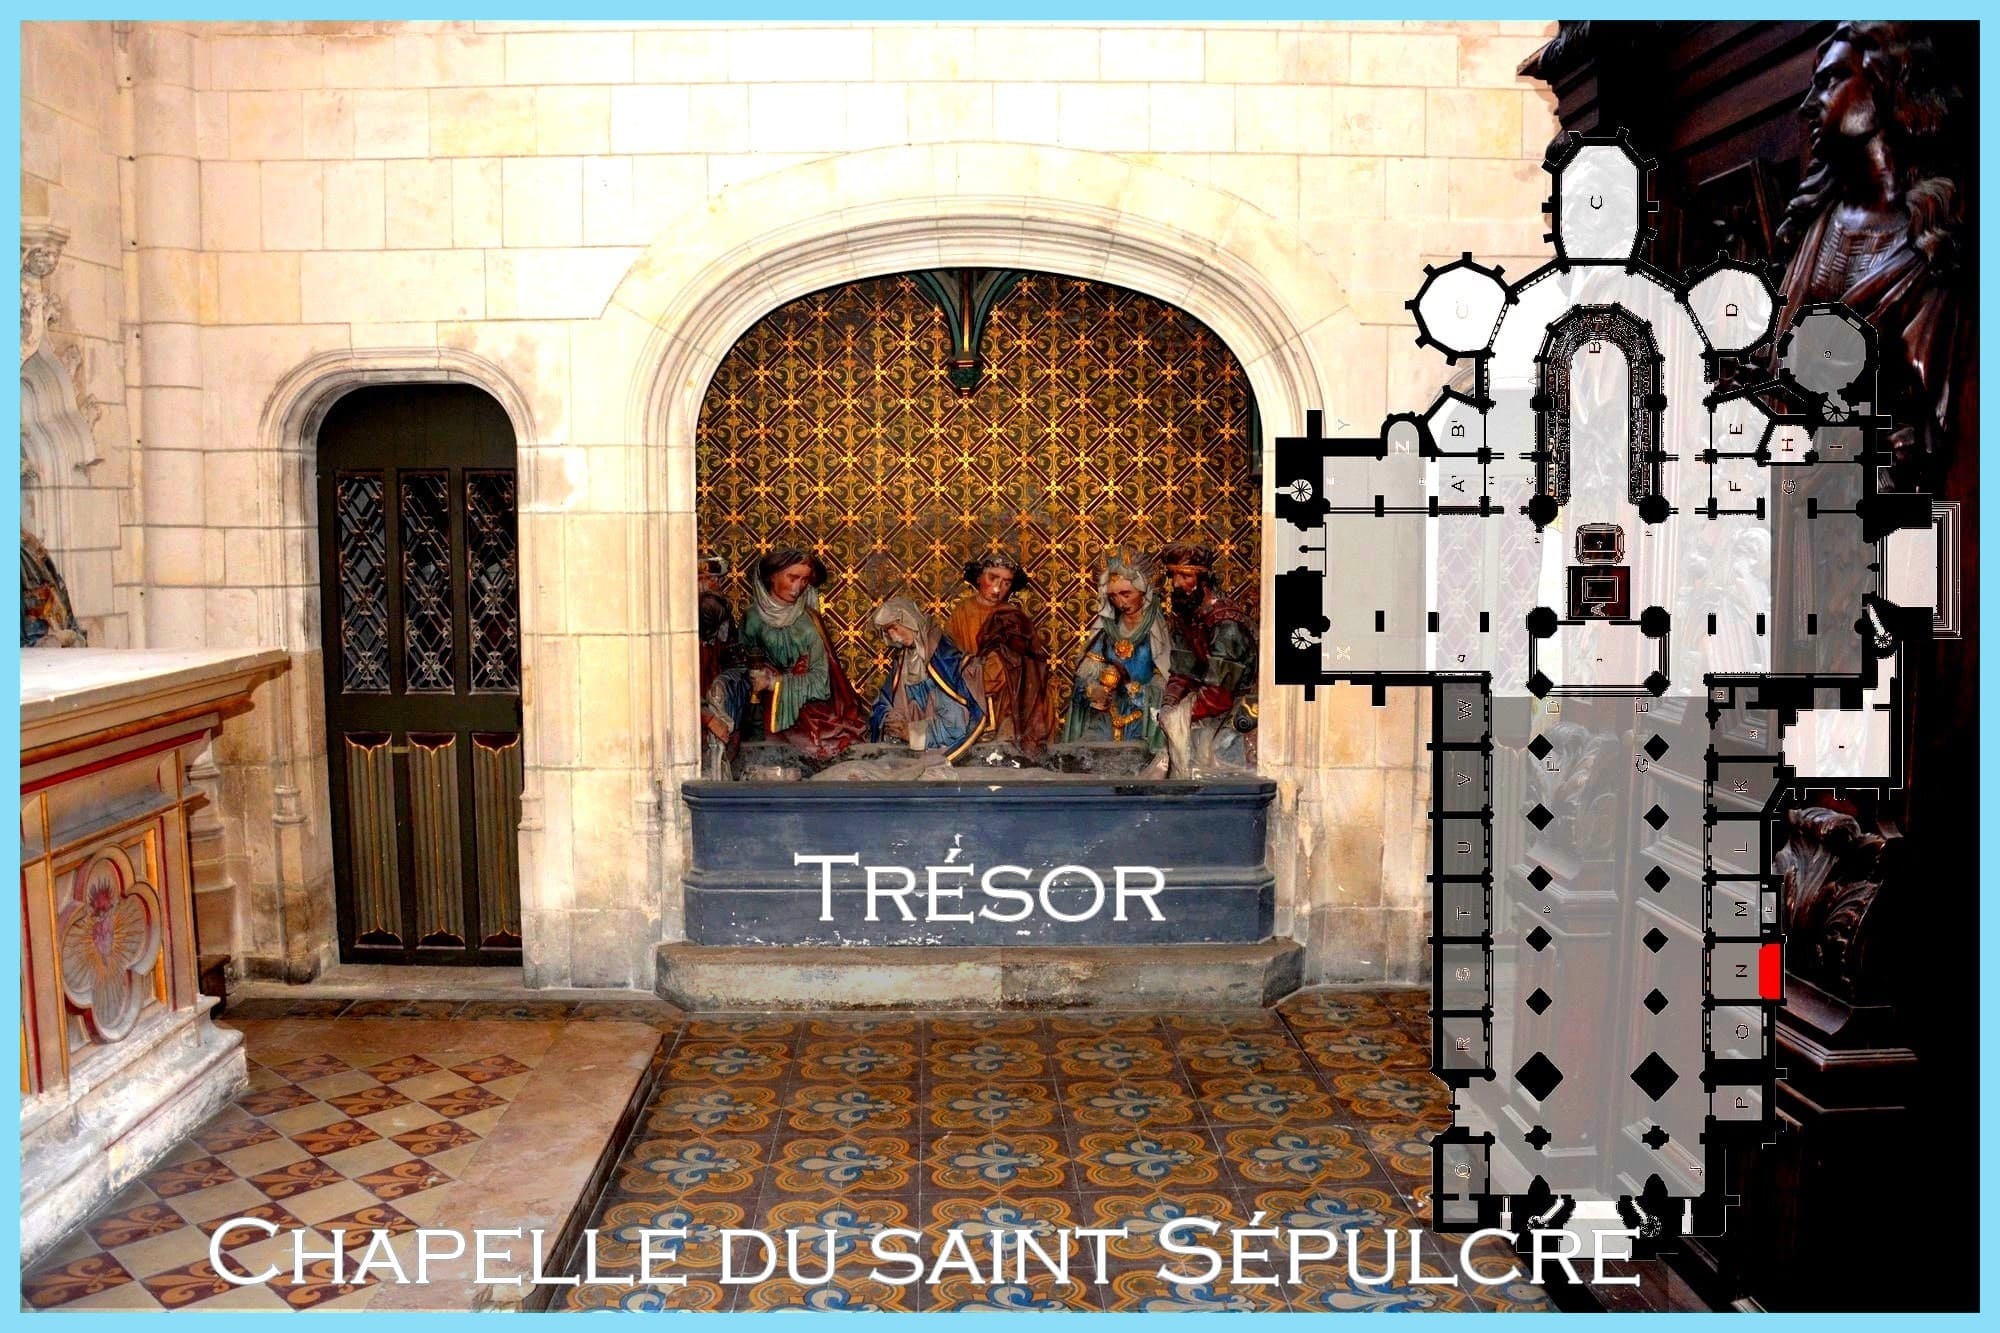  trésor Cathédrale Notre-Dame de Saint-Omer, Chapelle  du saint Sépulcre